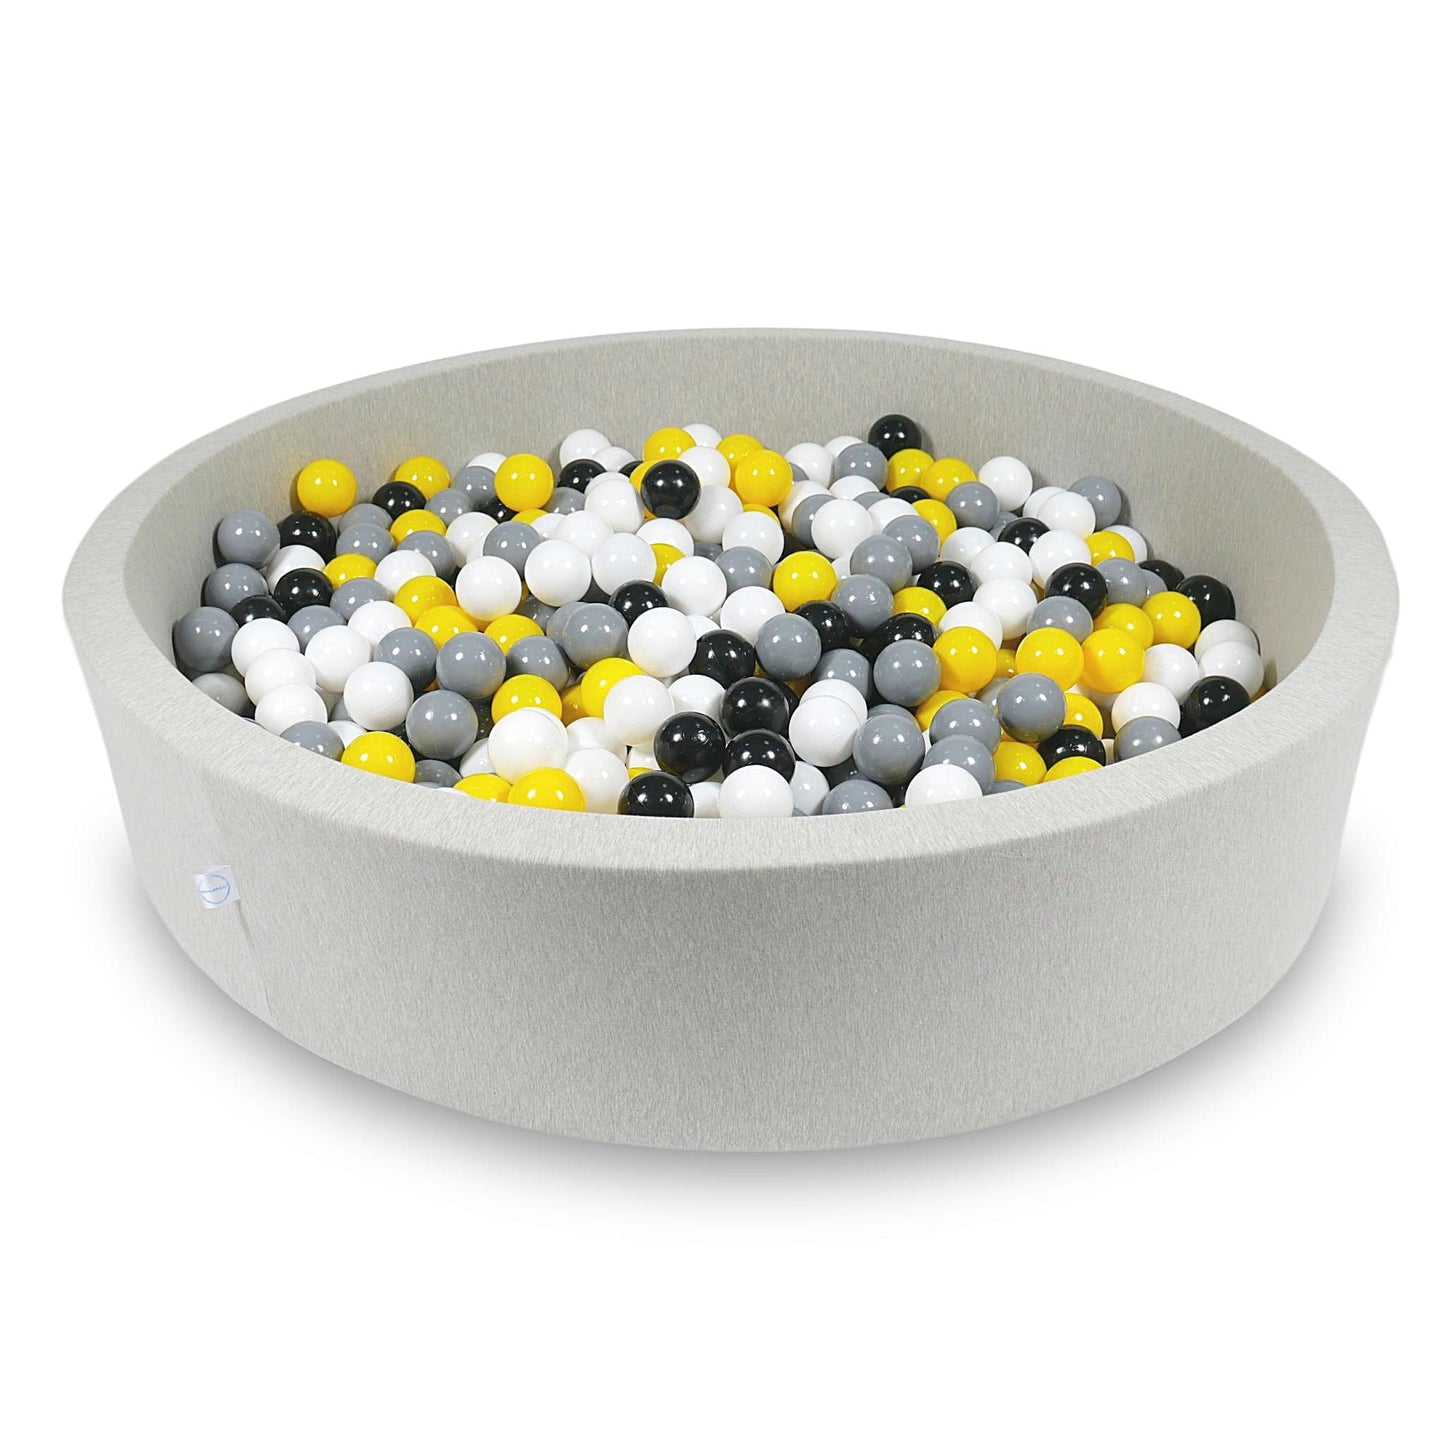 Piscine à Balles 130x30cm gris clair avec balles 600pcs (jaune, blanc, gris, noir)